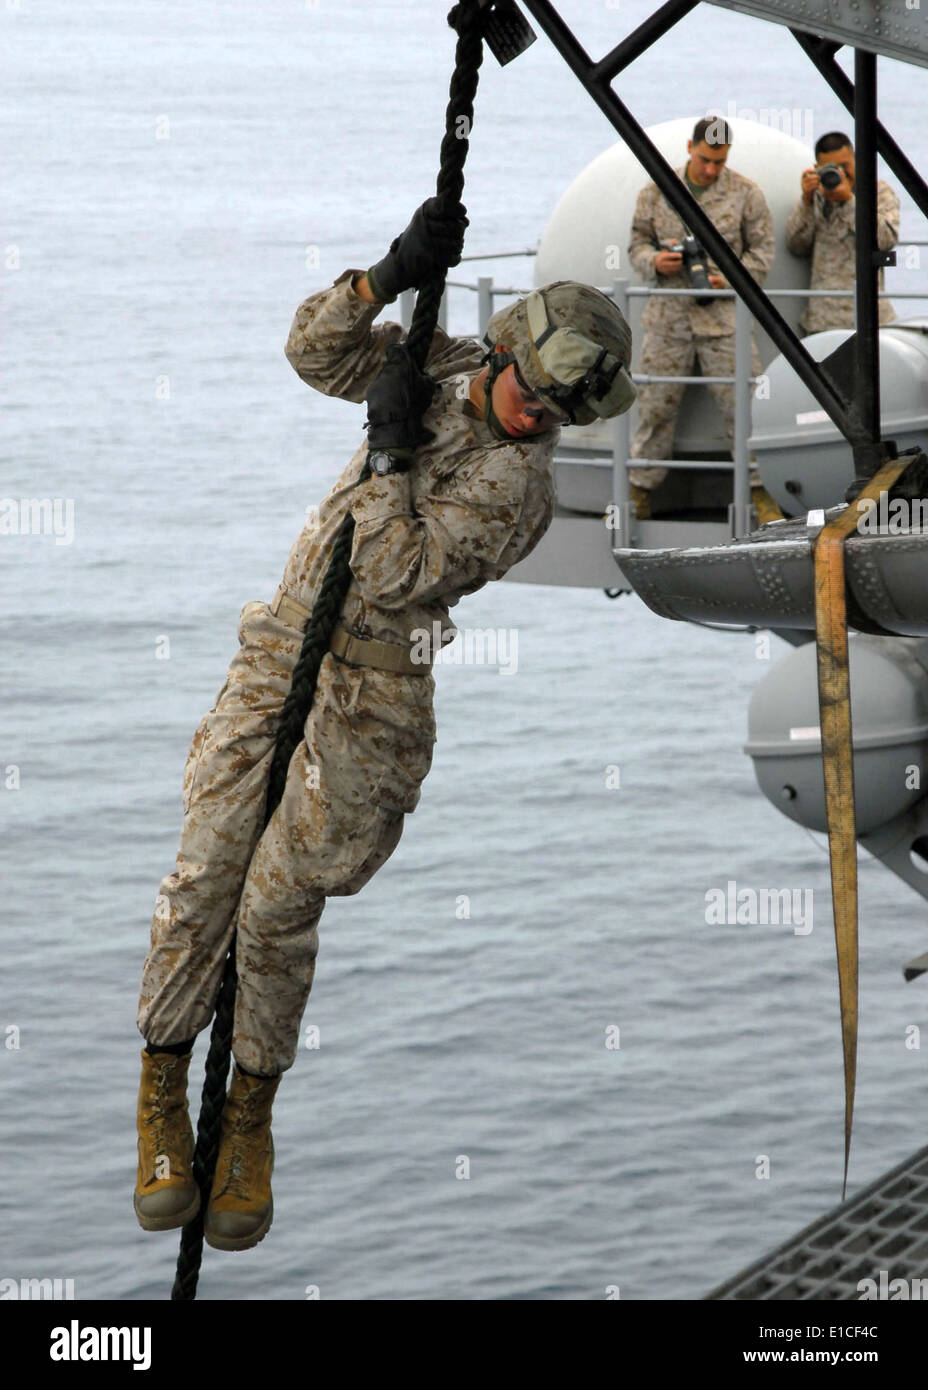 https://c8.alamy.com/comp/E1CF4C/a-us-marine-assigned-to-the-11th-marine-expeditionary-unit-fast-ropes-E1CF4C.jpg